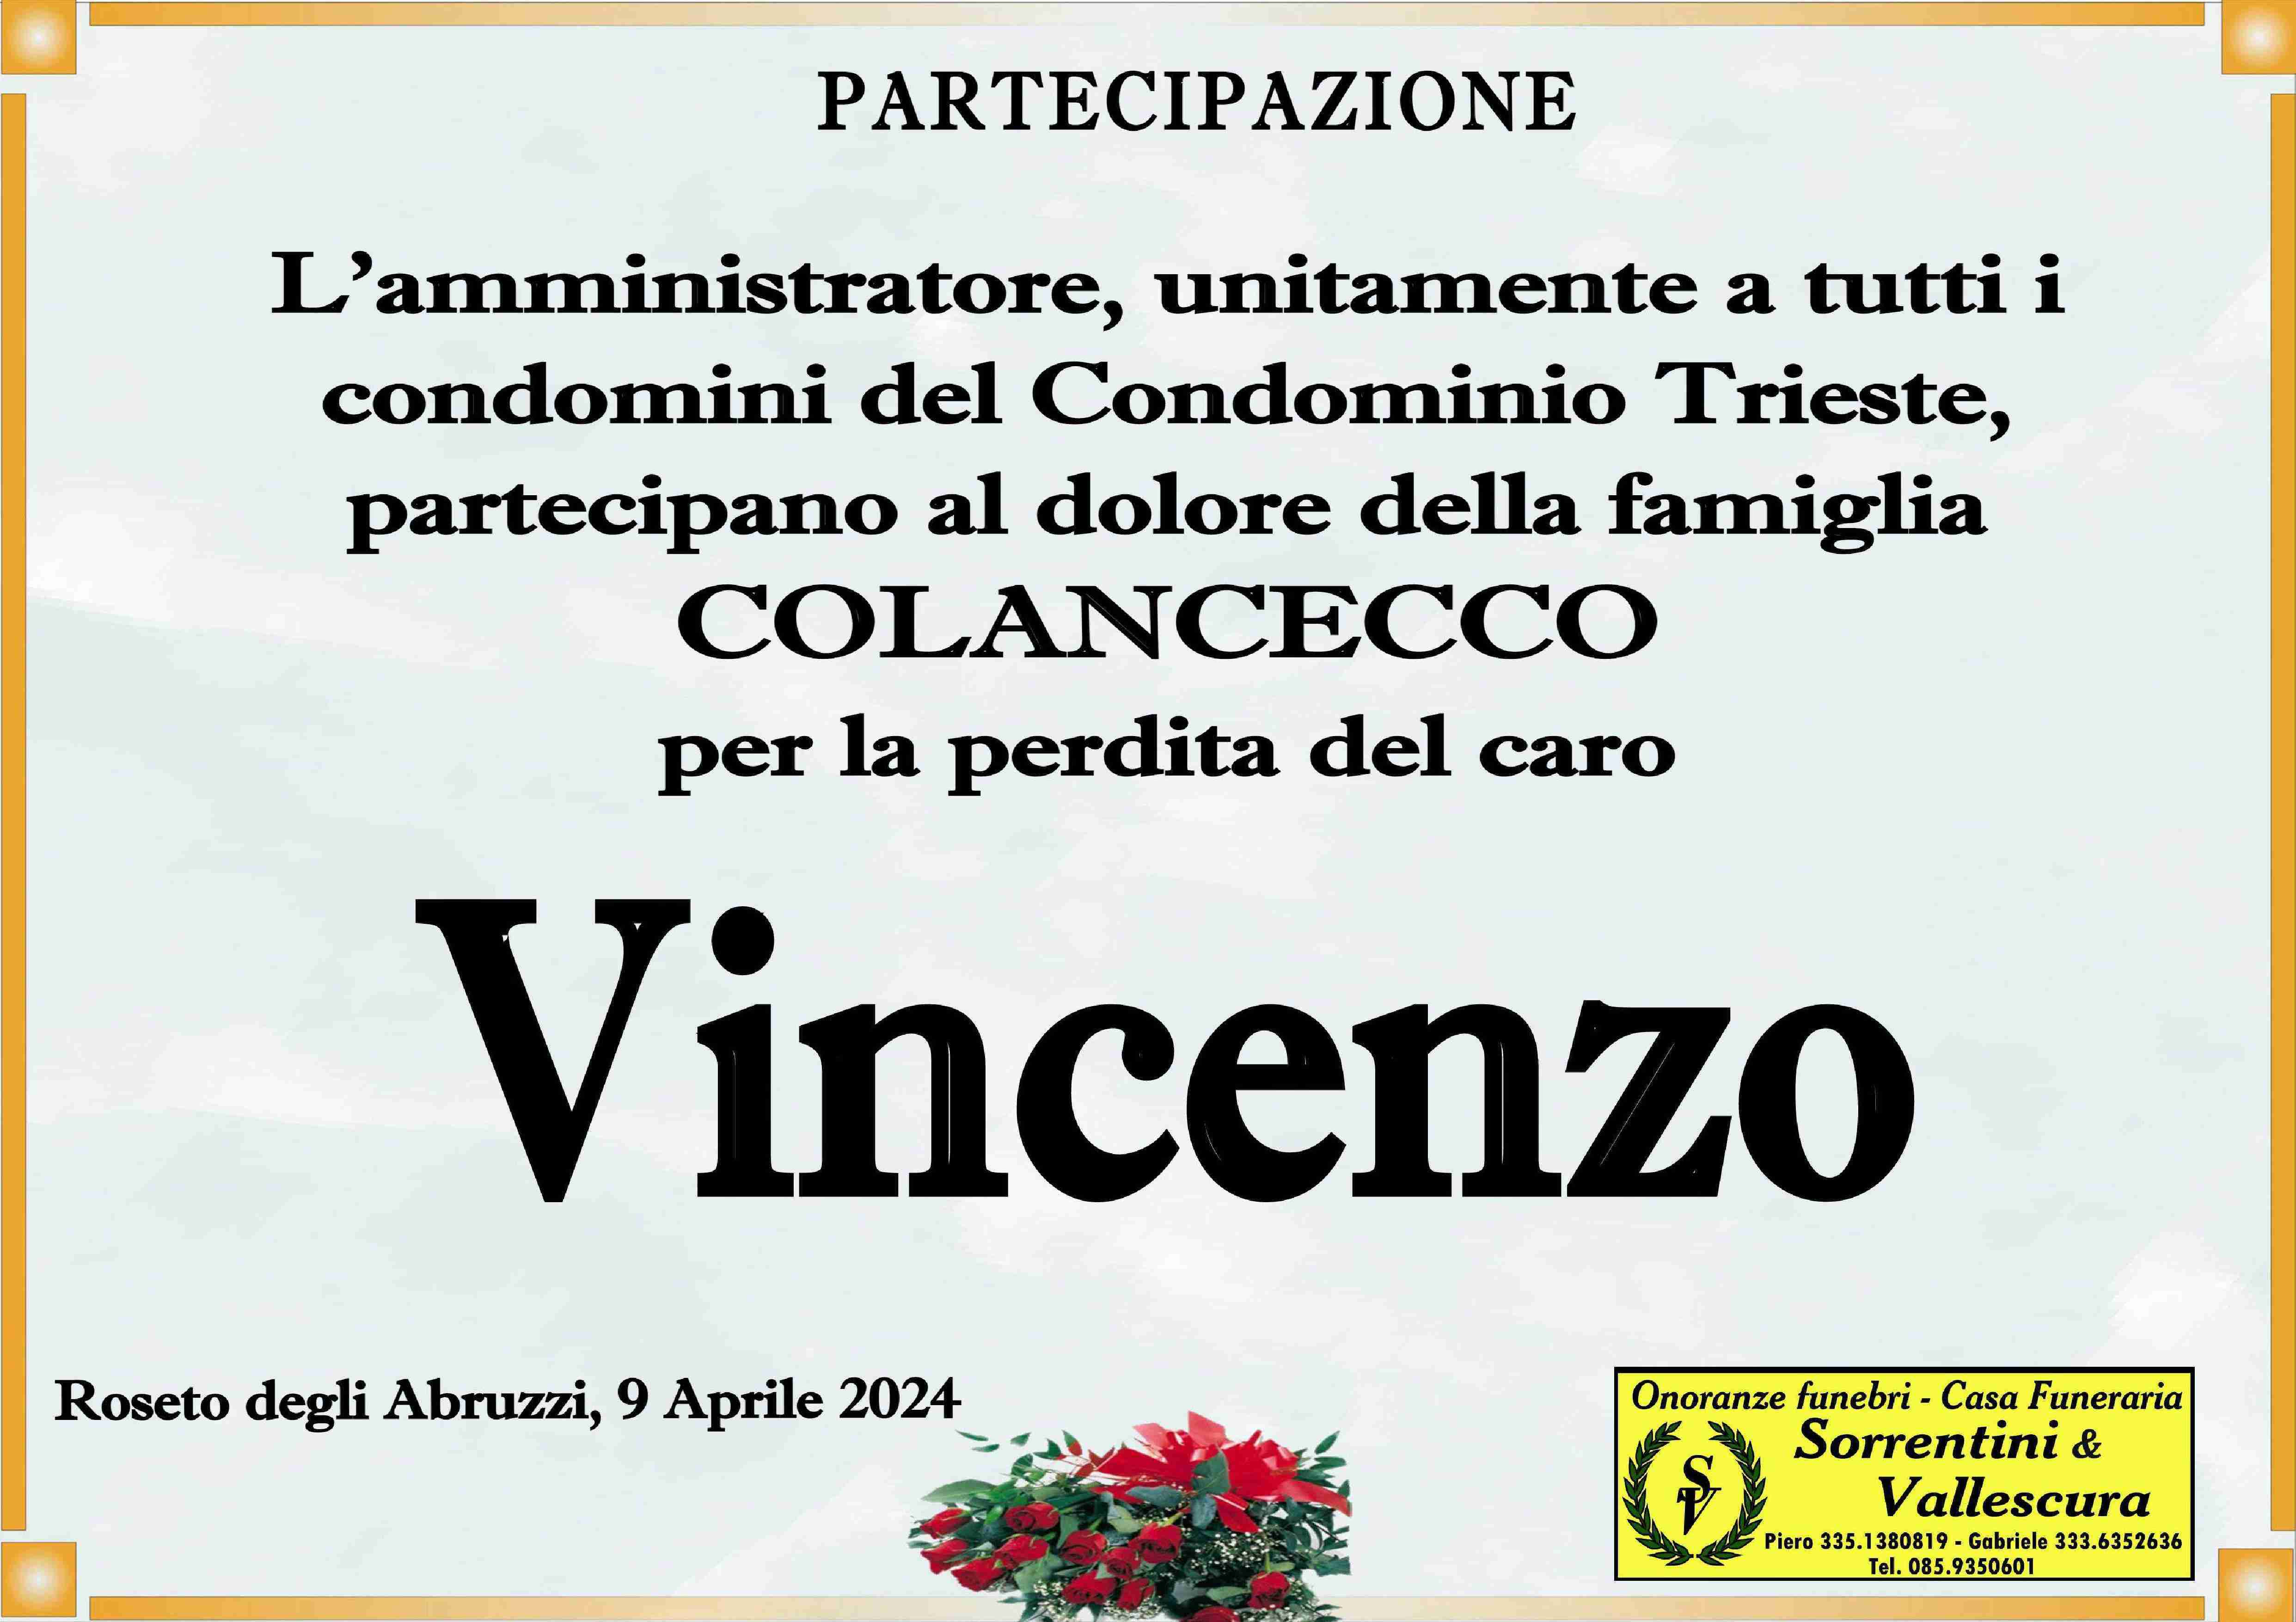 Vincenzo Colancecco